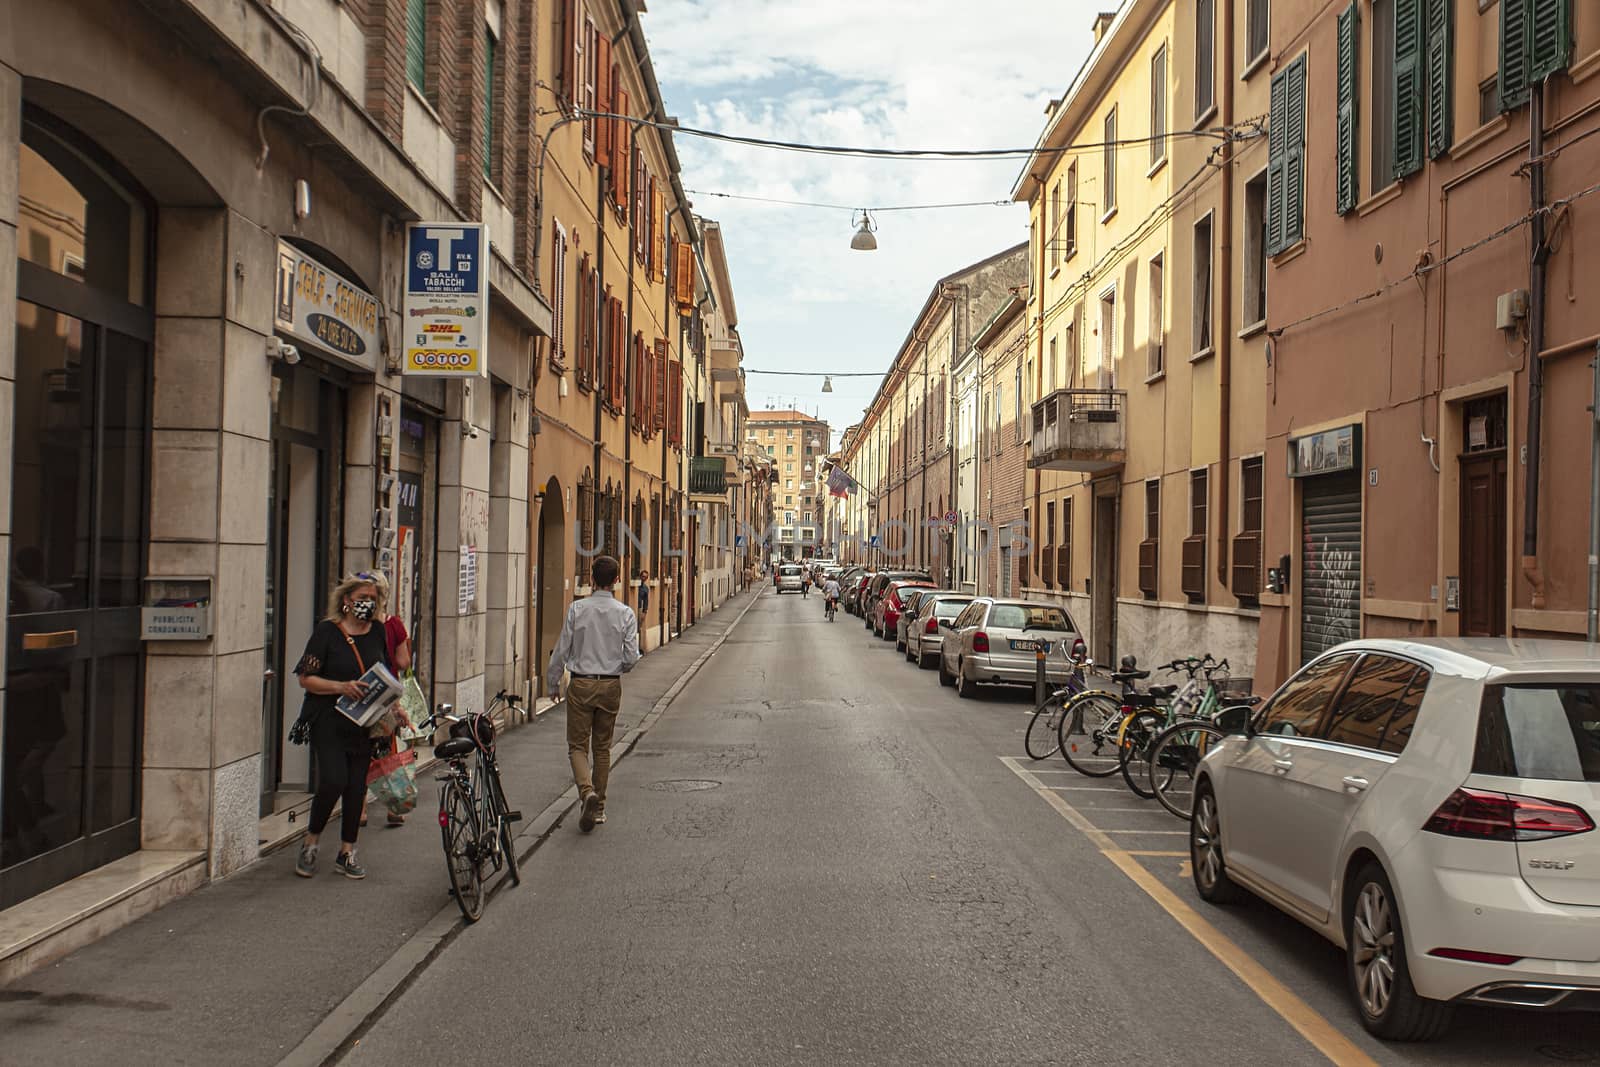 FERRARA, ITALY 29 JULY 2020 : People in street life in Ferrara in Italy